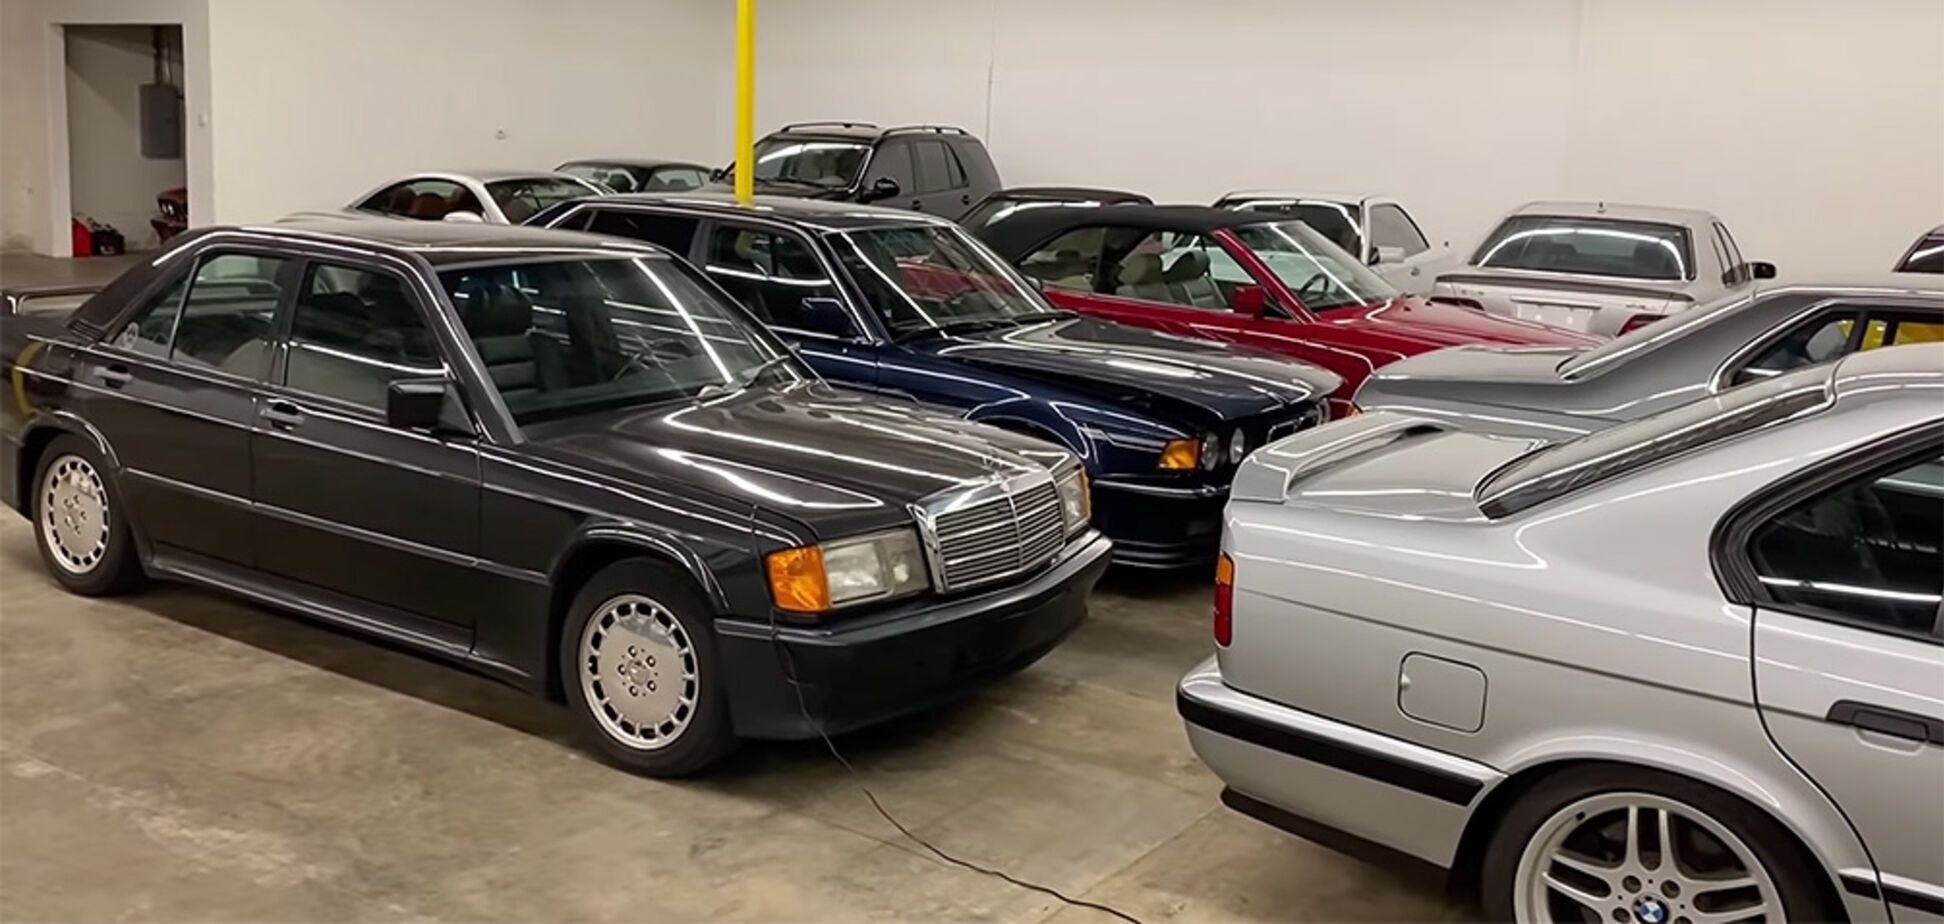 Блогер знайшов гараж мрії з чотирма десятками культових Mercedes і BMW